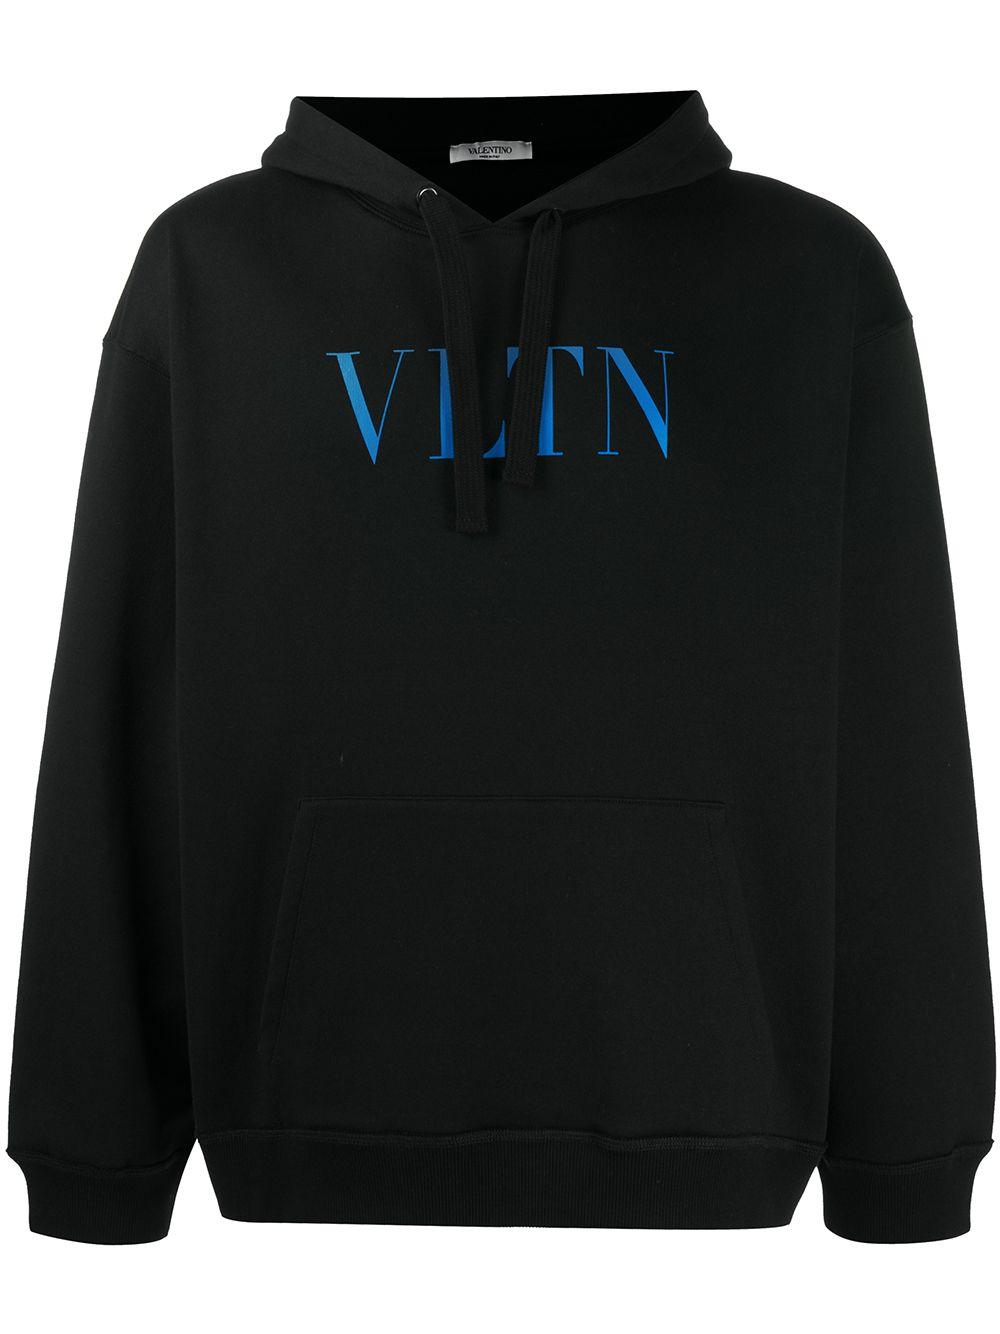 Valentino Cotton Vltn Hoodie in Black for Men - Lyst